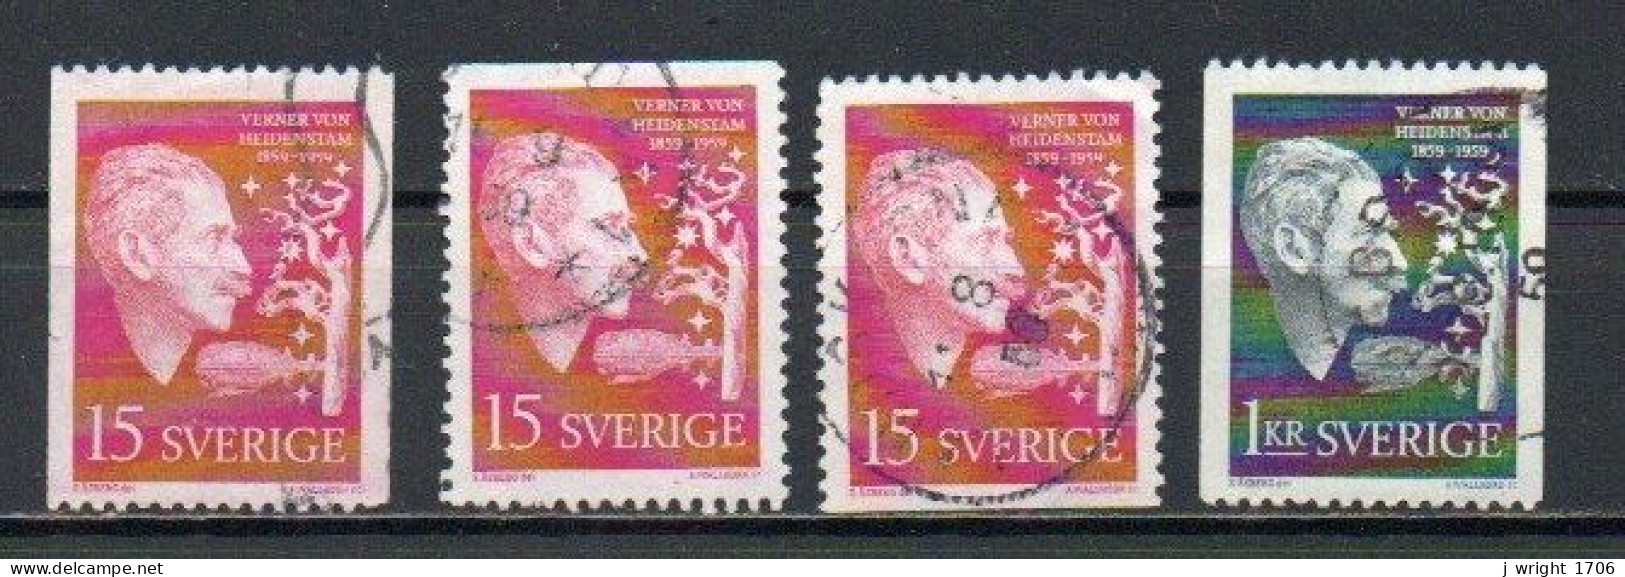 Sweden, 1959, Verner Von Heidenstam, Set, USED - Gebraucht